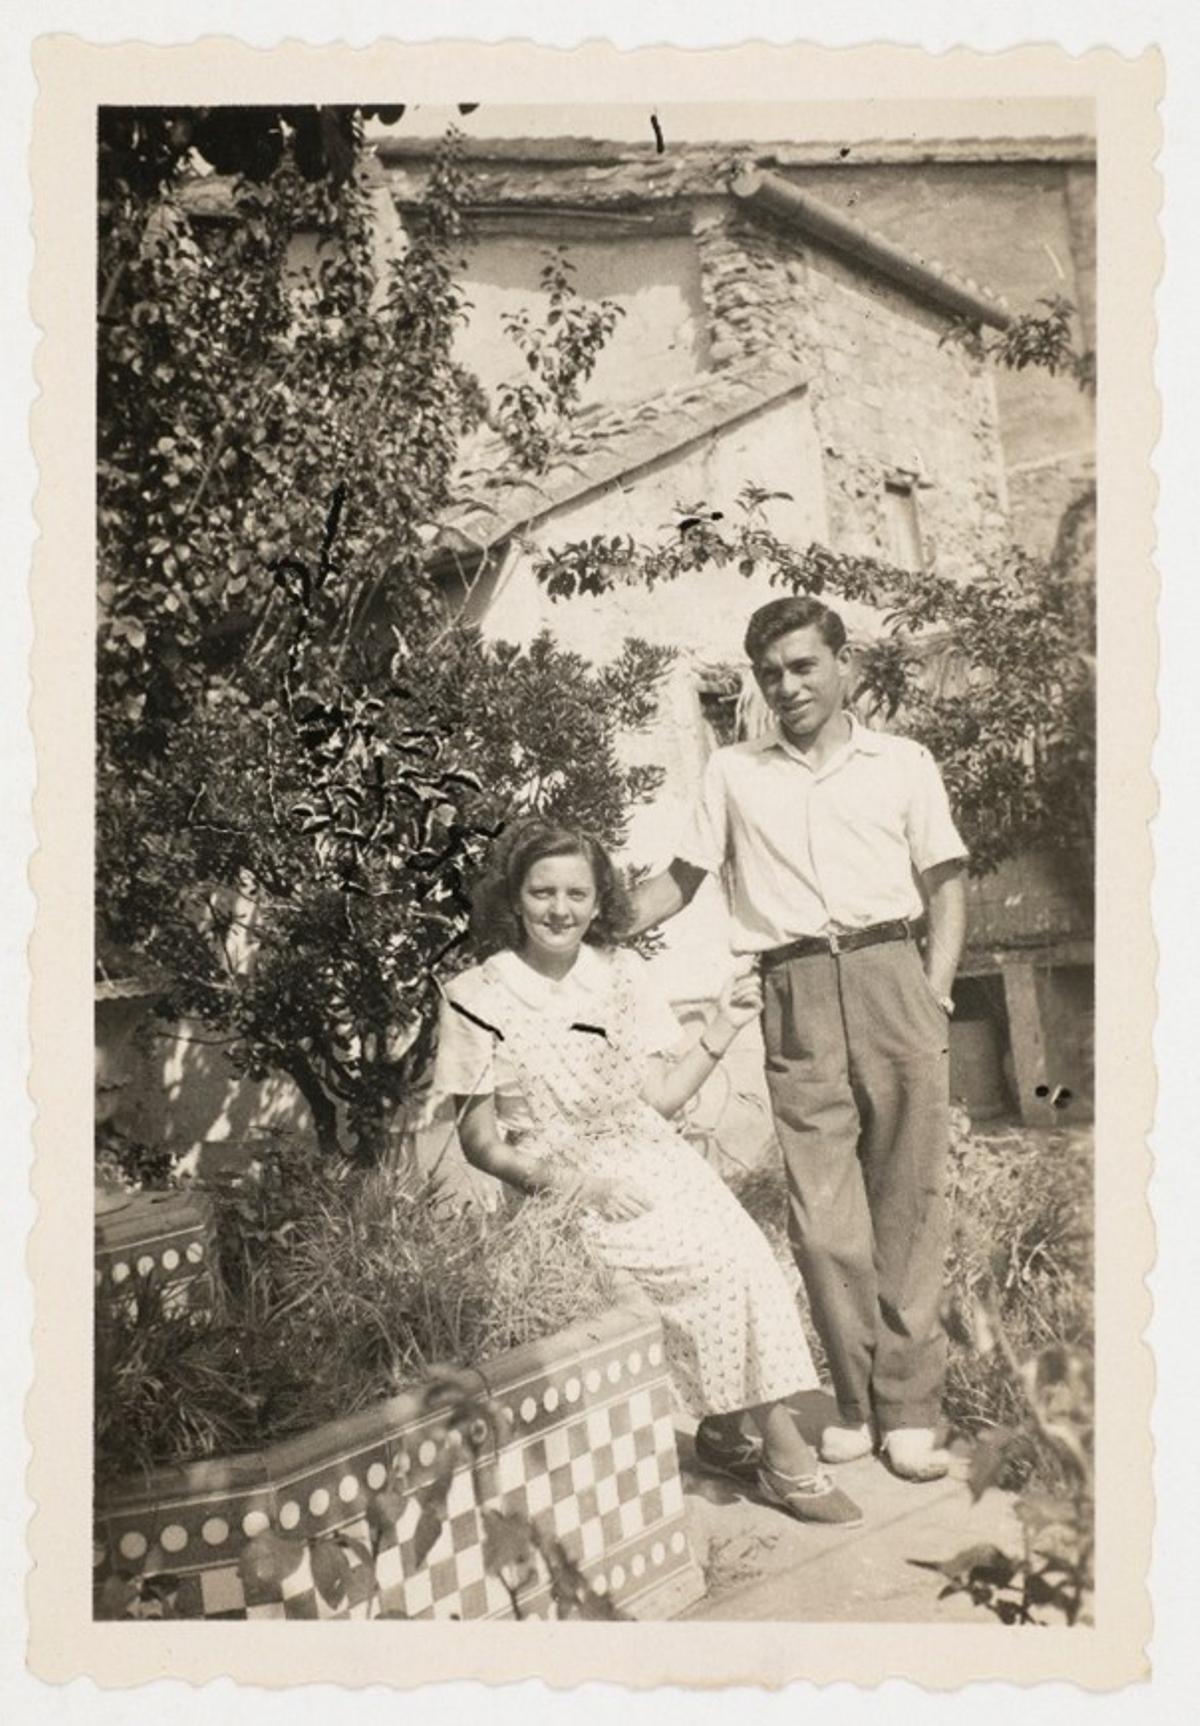 Matrimoni Michavila als anys 50